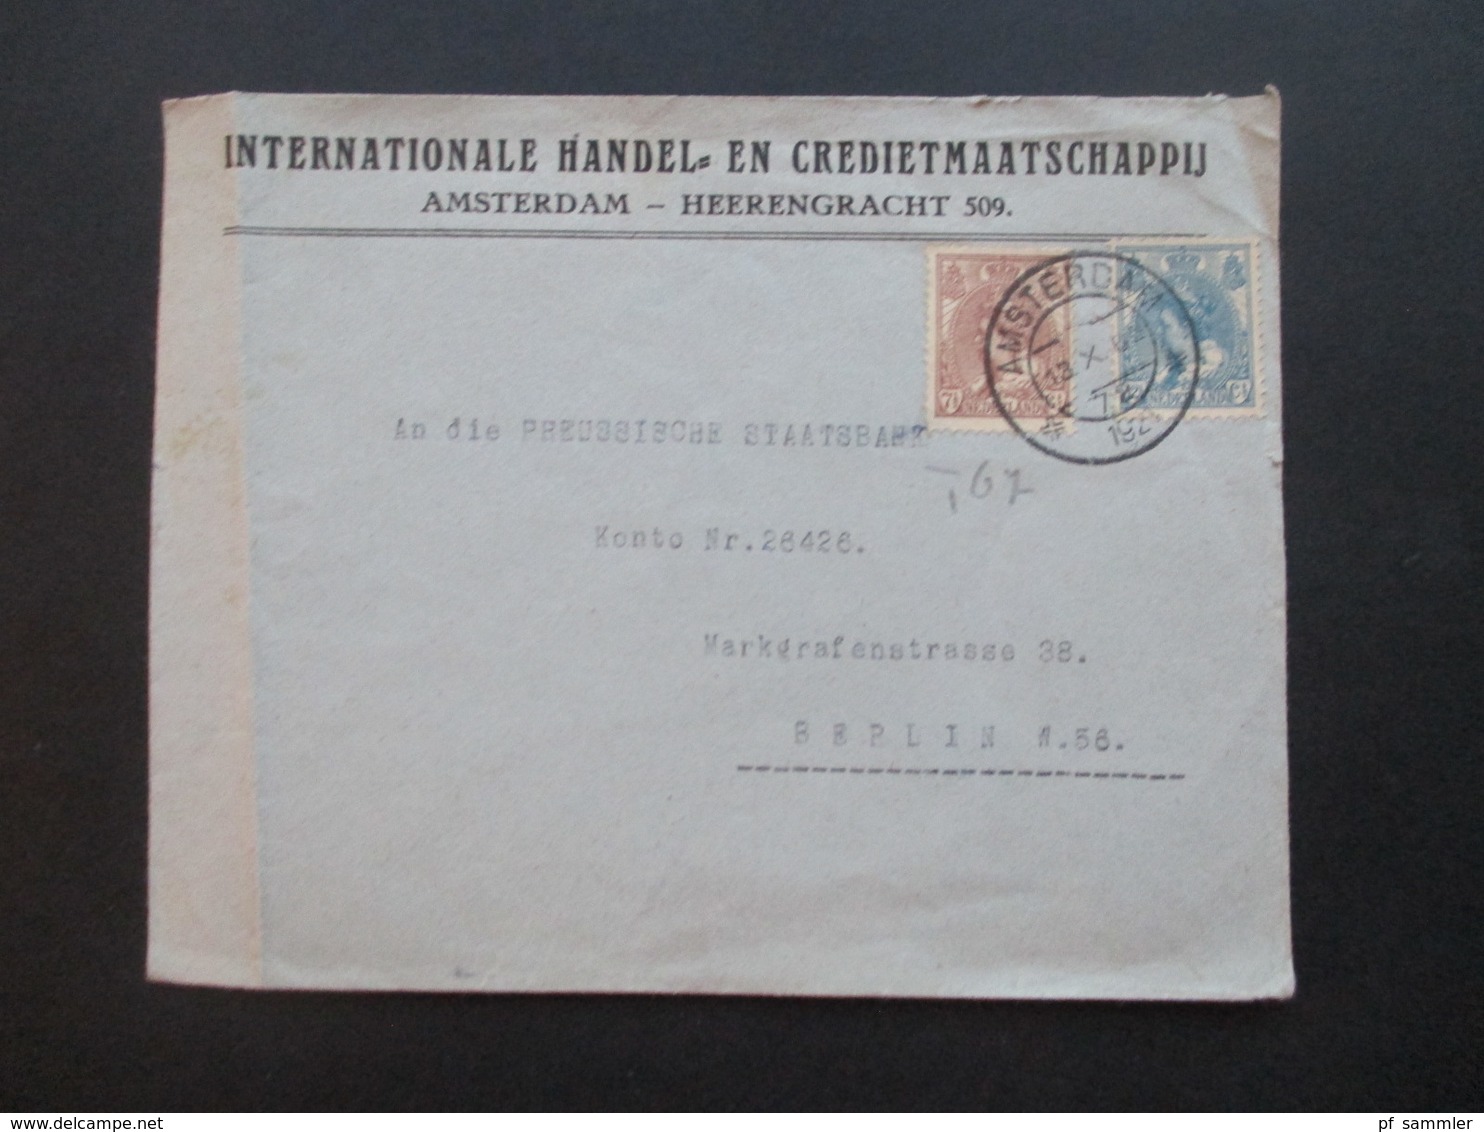 Niederlande 1921 4 Belege an die Preussische Staatsbank Königliche Seehandlung in Berlin Bankenkorrespondenz